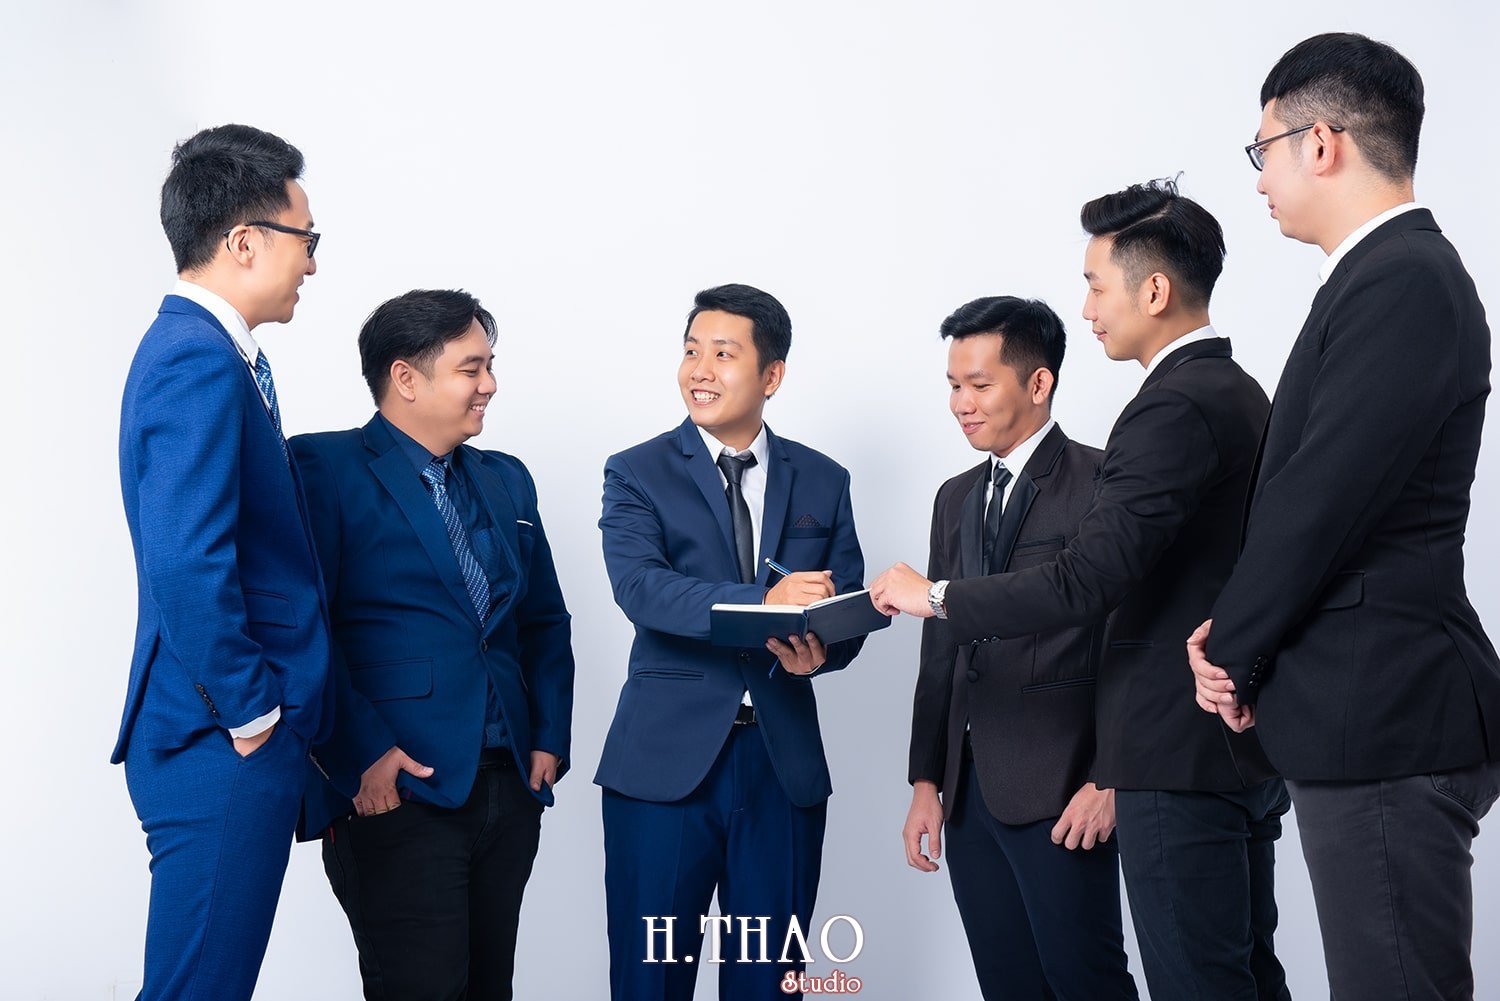 Anh profile cong ty 1 - Tổng hợp ảnh đẹp doanh nhân, profile, art tháng 4 – HThao Studio